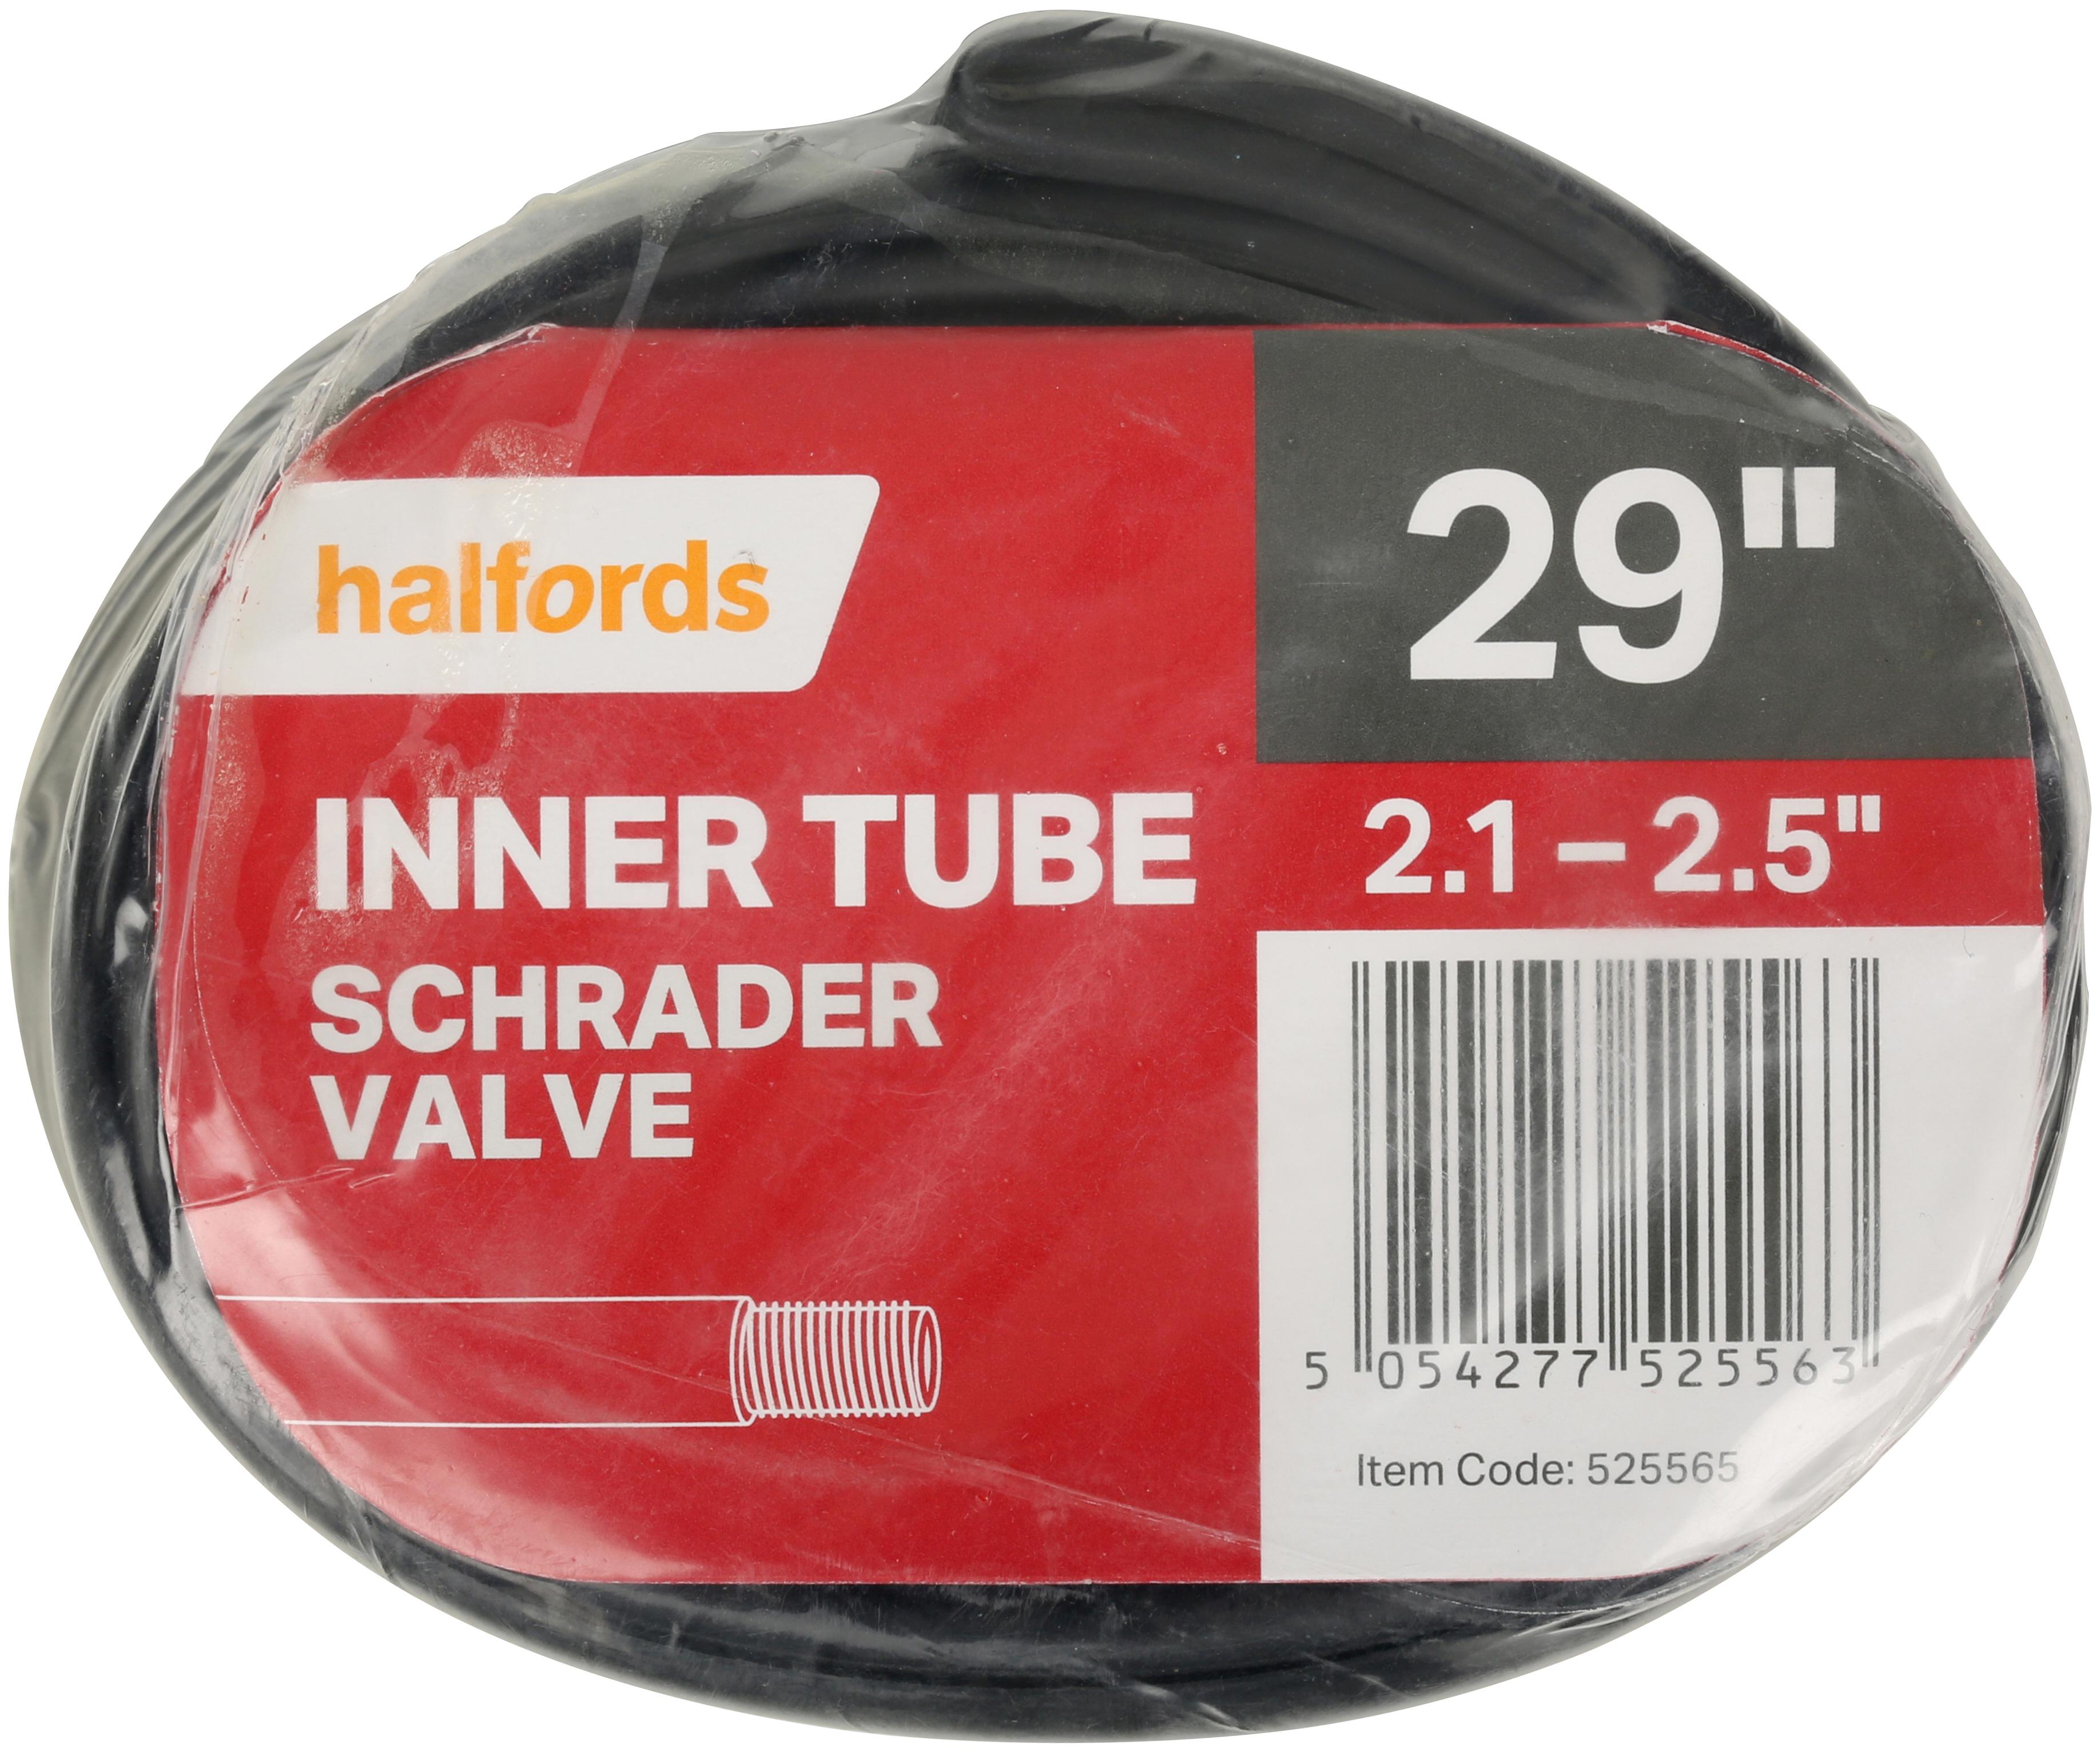 Halfords Bike Inner Tube, 29 Inch X 2.1 - 2.5 Inch, Schrader